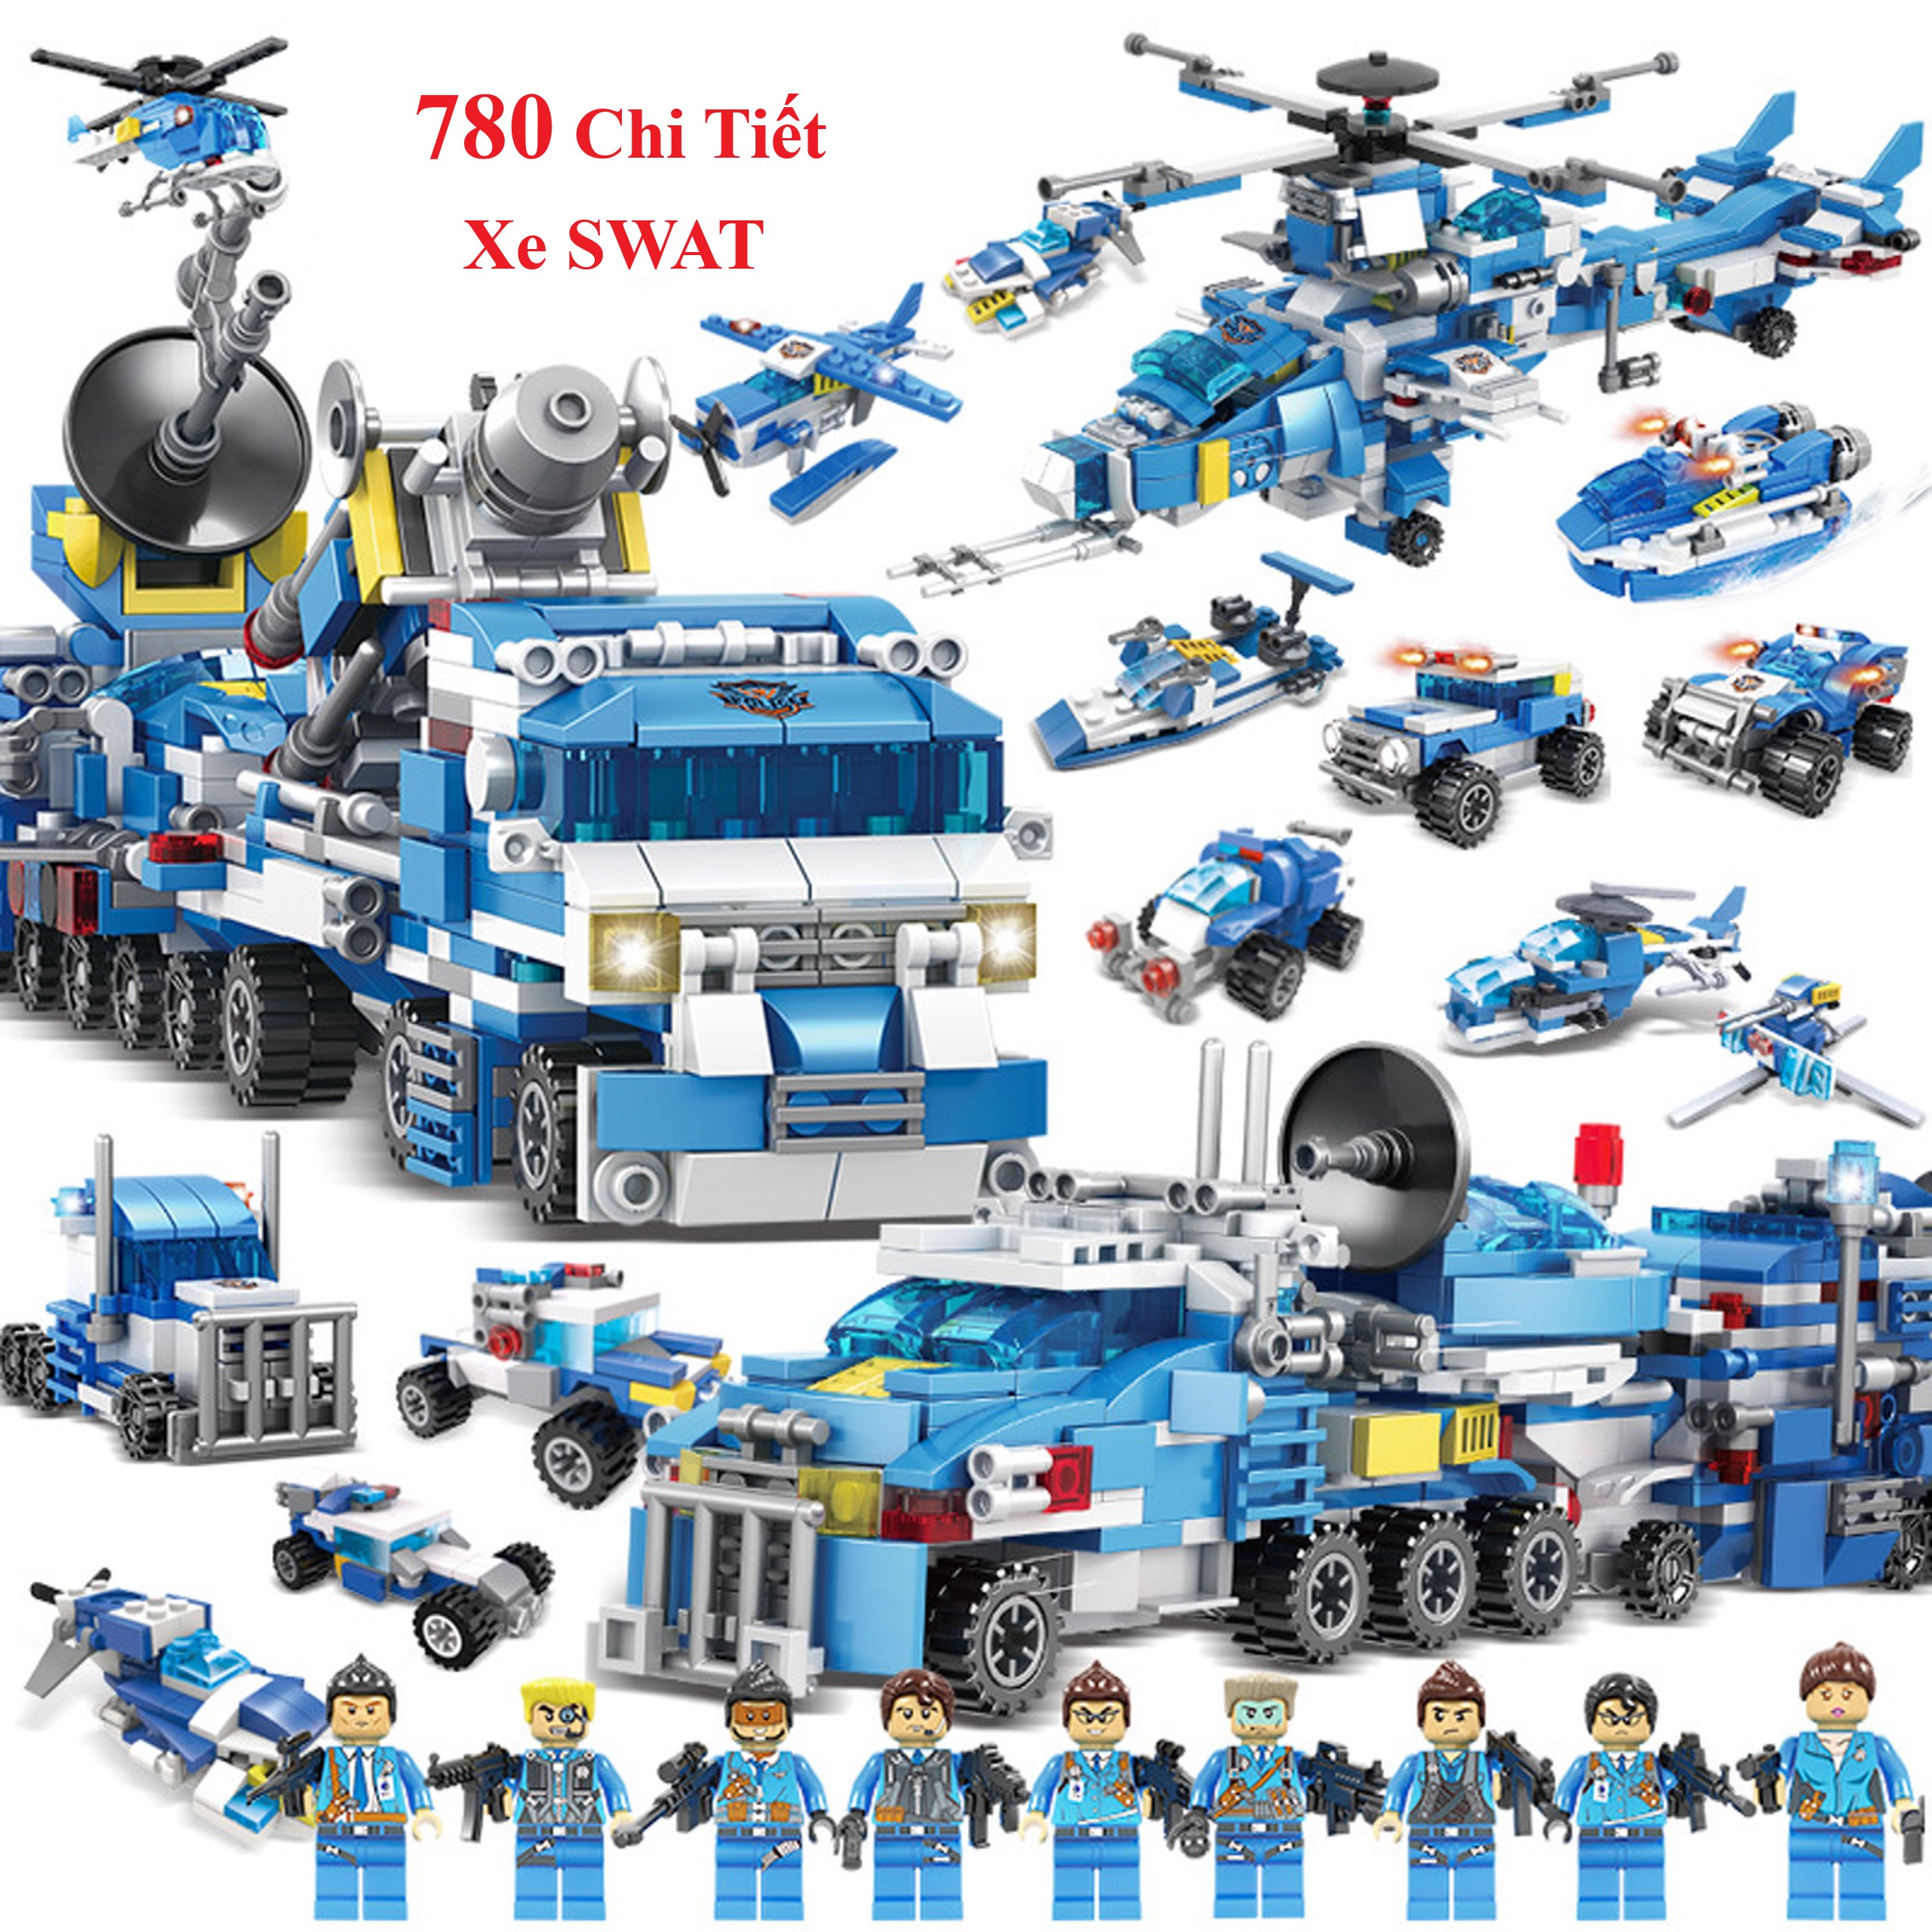 Bộ Đồ Chơi Xếp Hình Lego Chiến Hạm, Lego Xe Swat, Lego Tàu Chiến